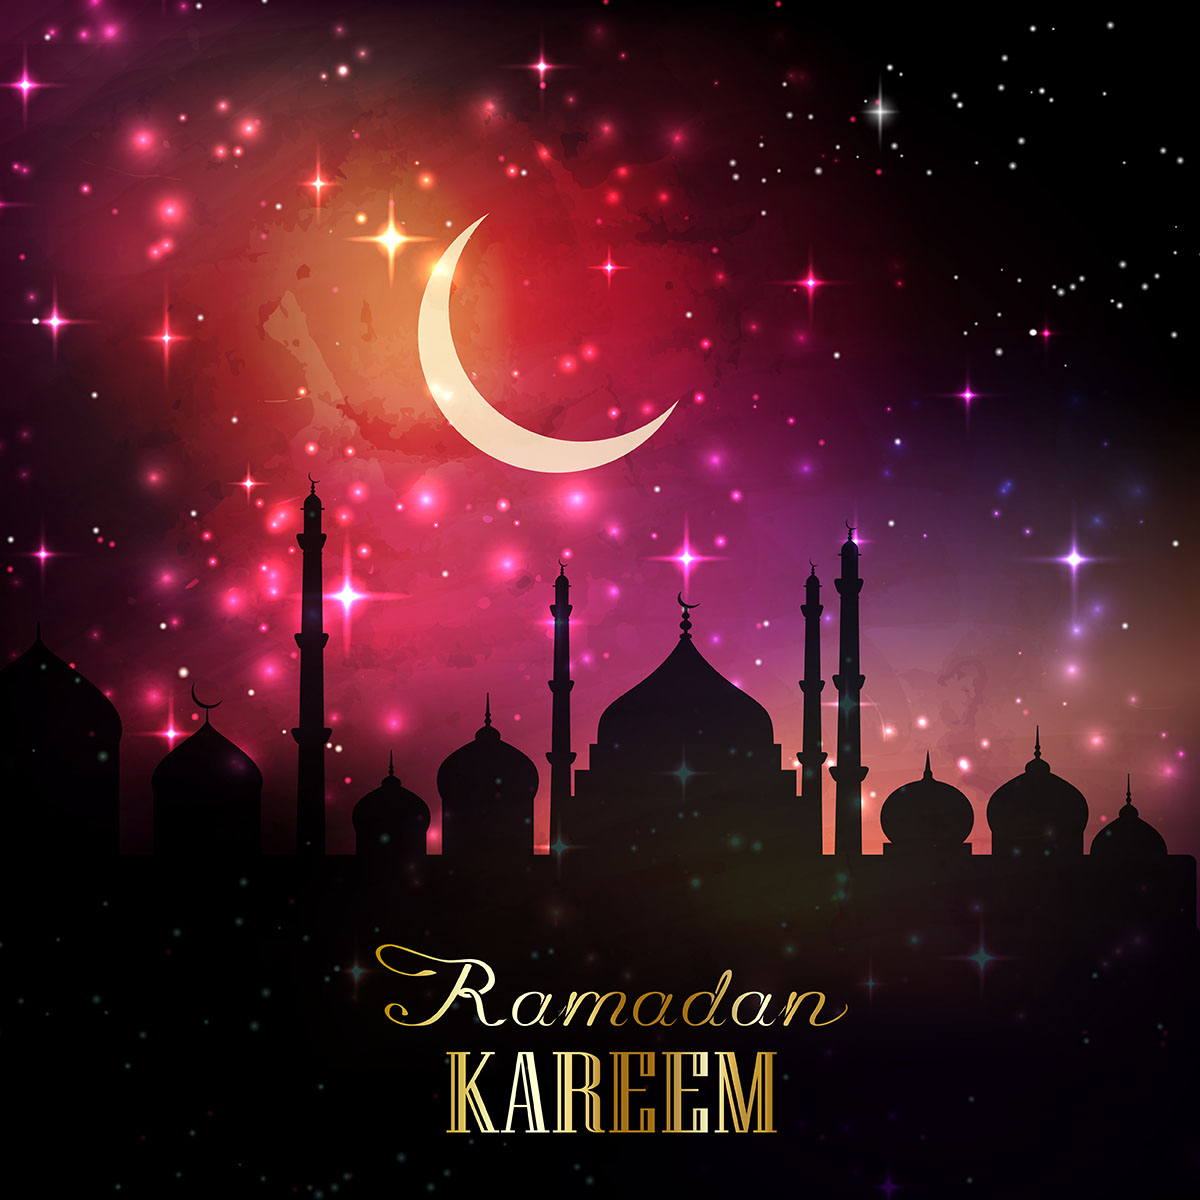  ramadan  background  1605 204482 Download Free Vectors 